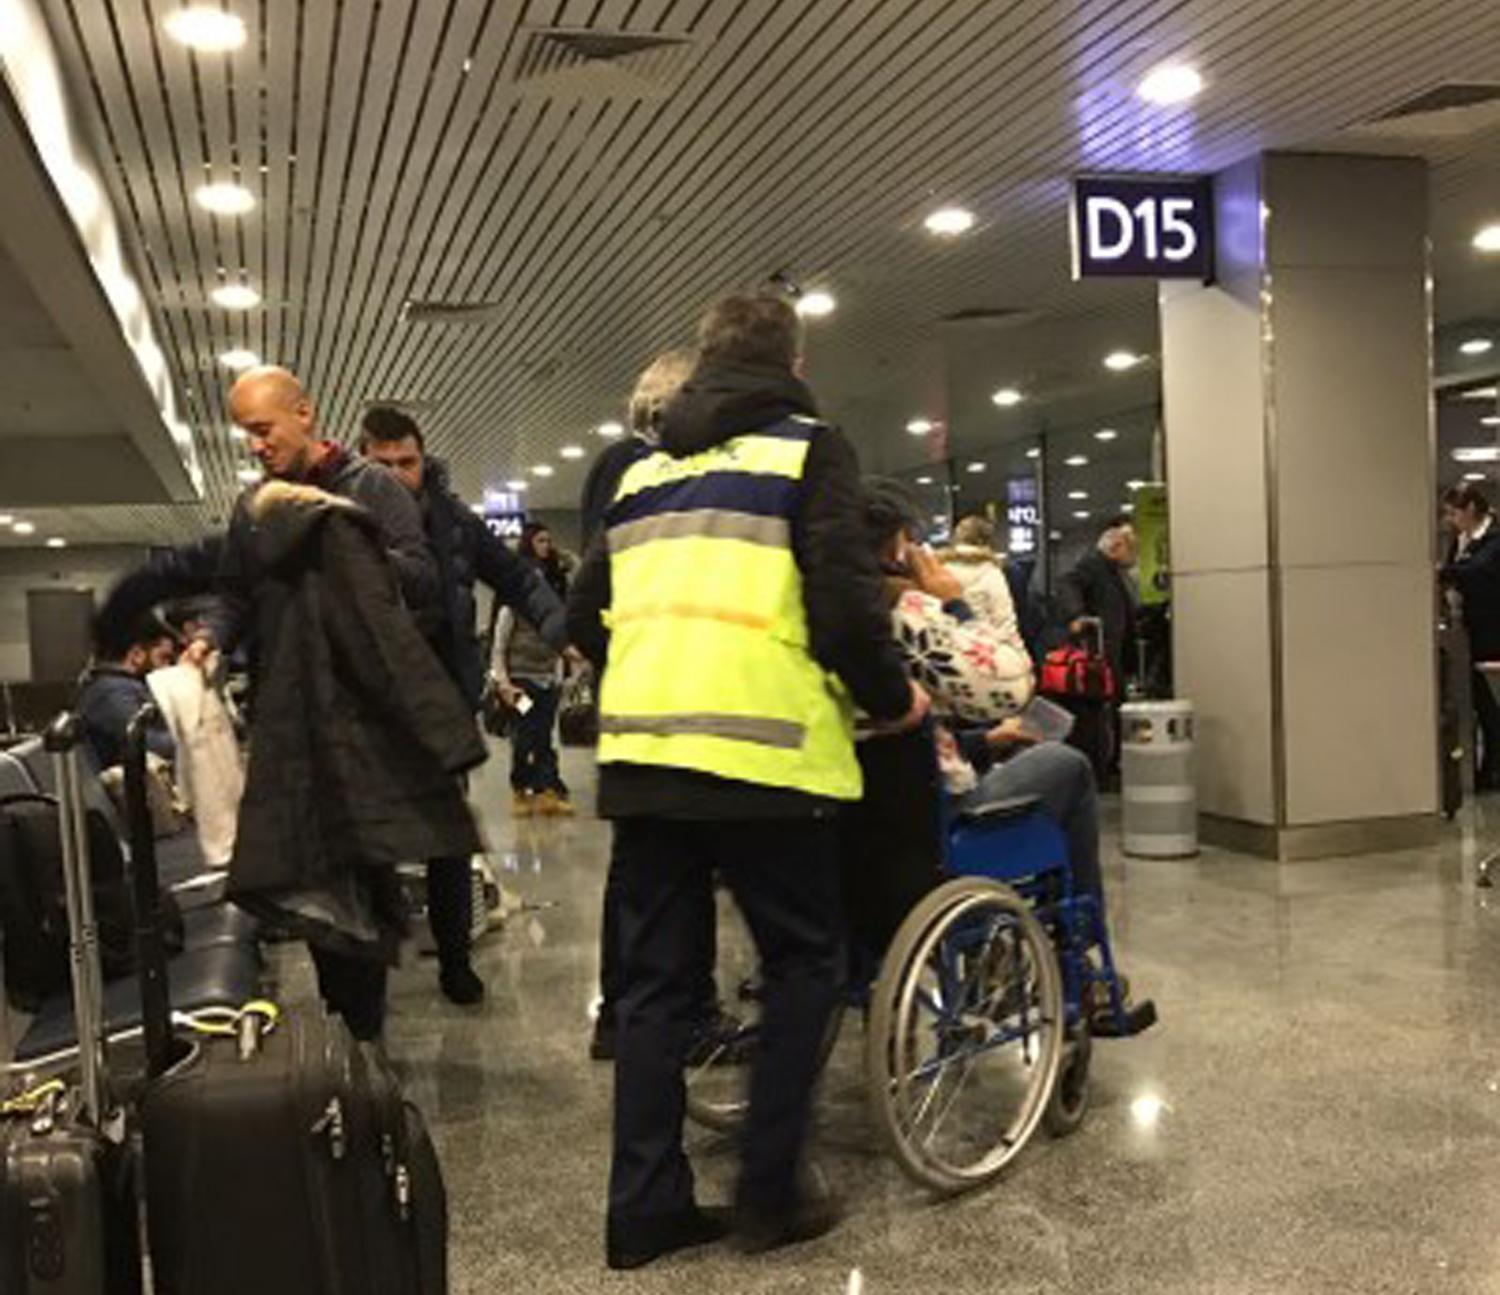 "Taraftarları tekerlekli sandalyelerle uçağa getiriyorlar"